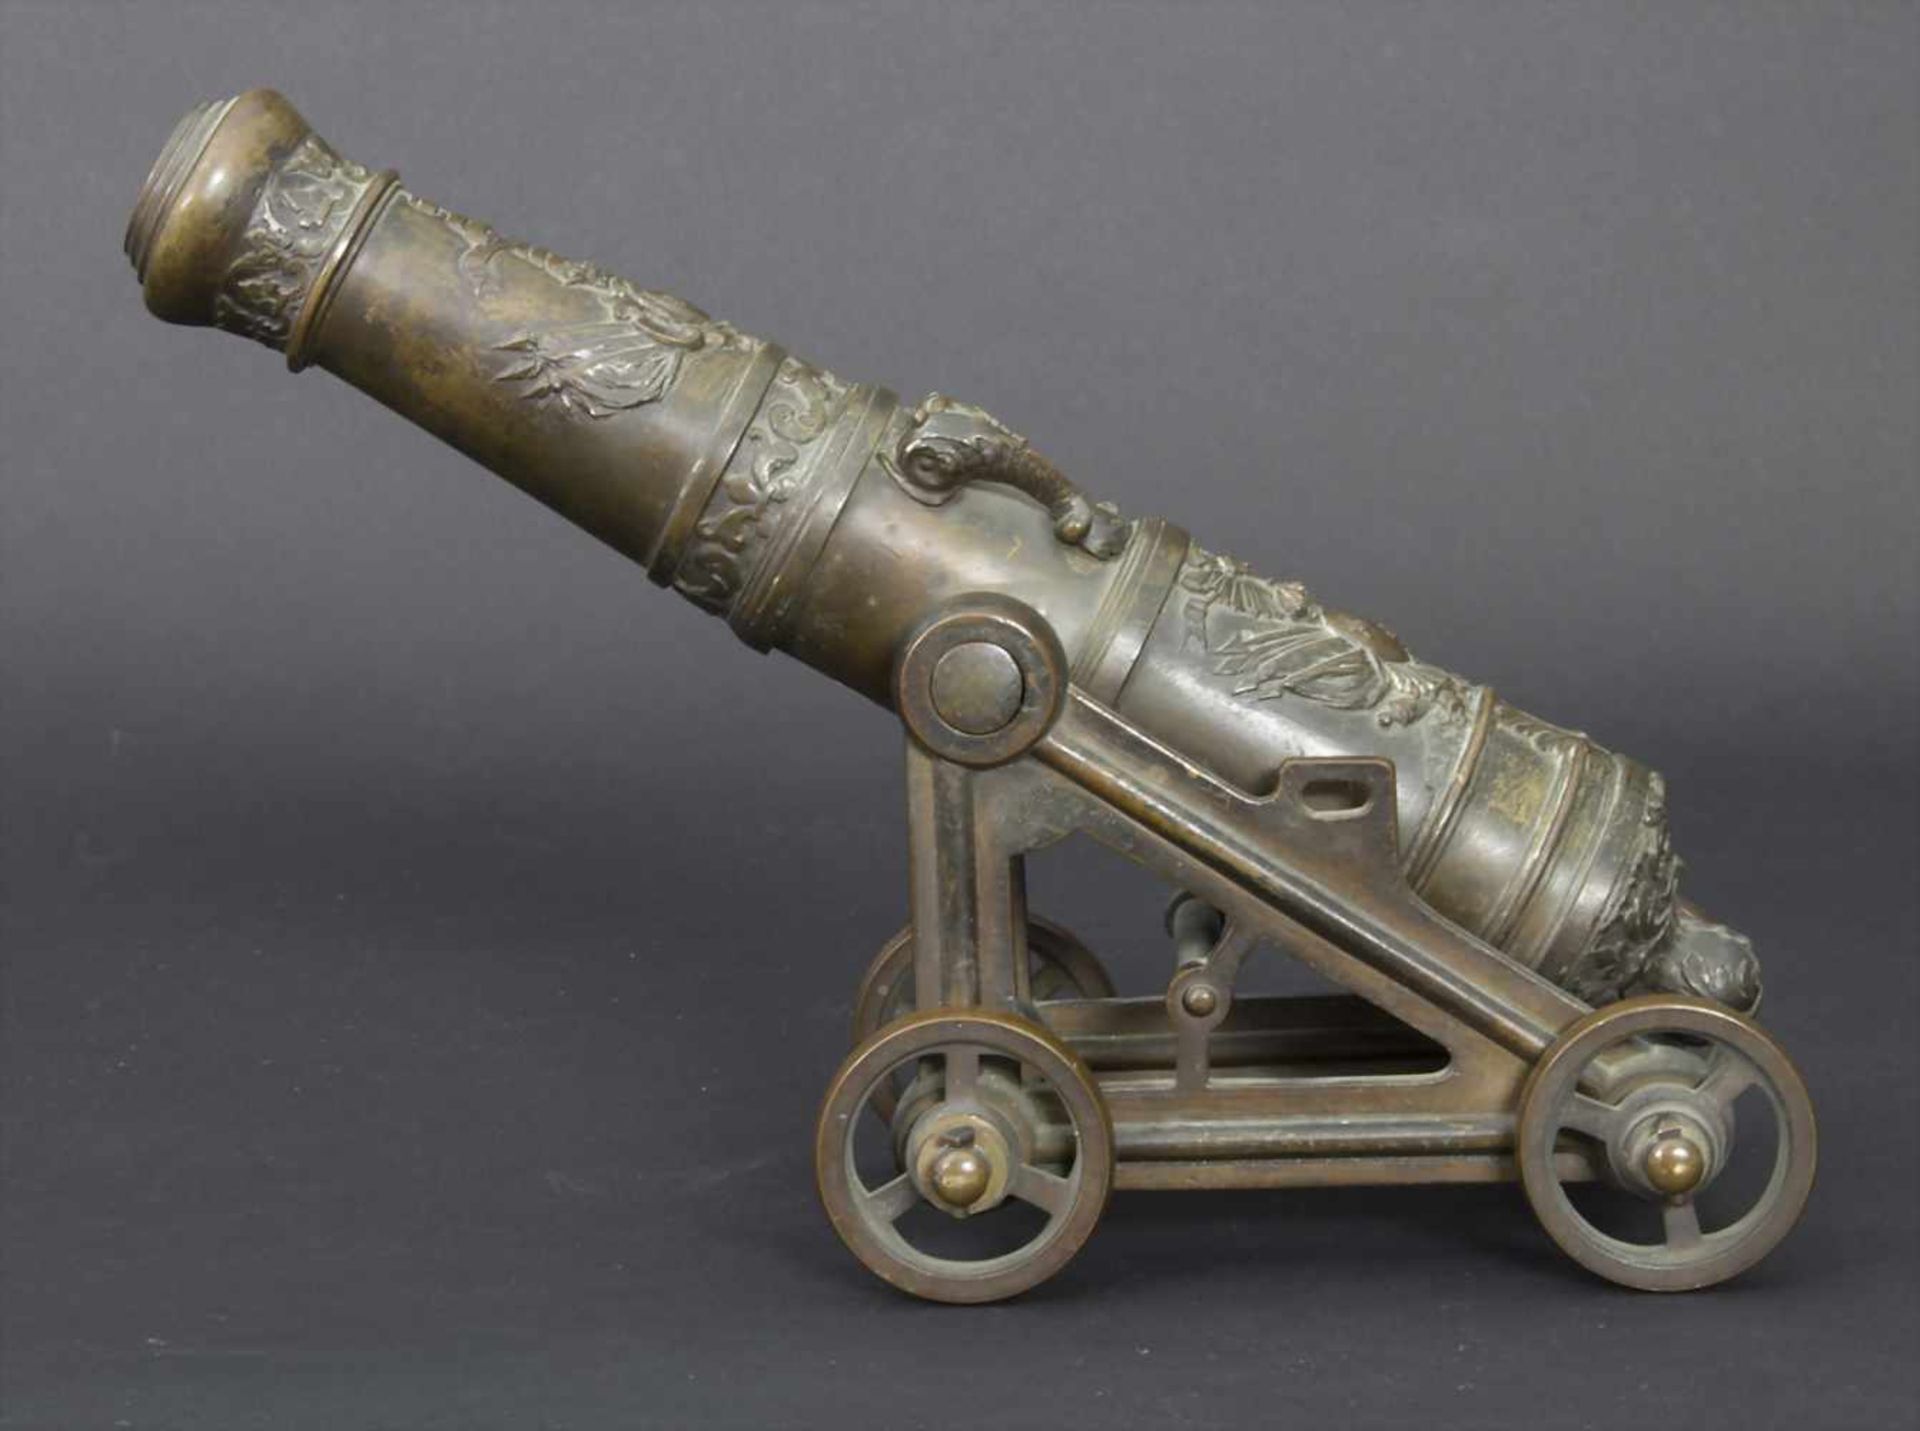 Modell-Kanone nach barockem Vorbild, 19. Jh.Material: Bronze, Kanonenrohr mit vielen